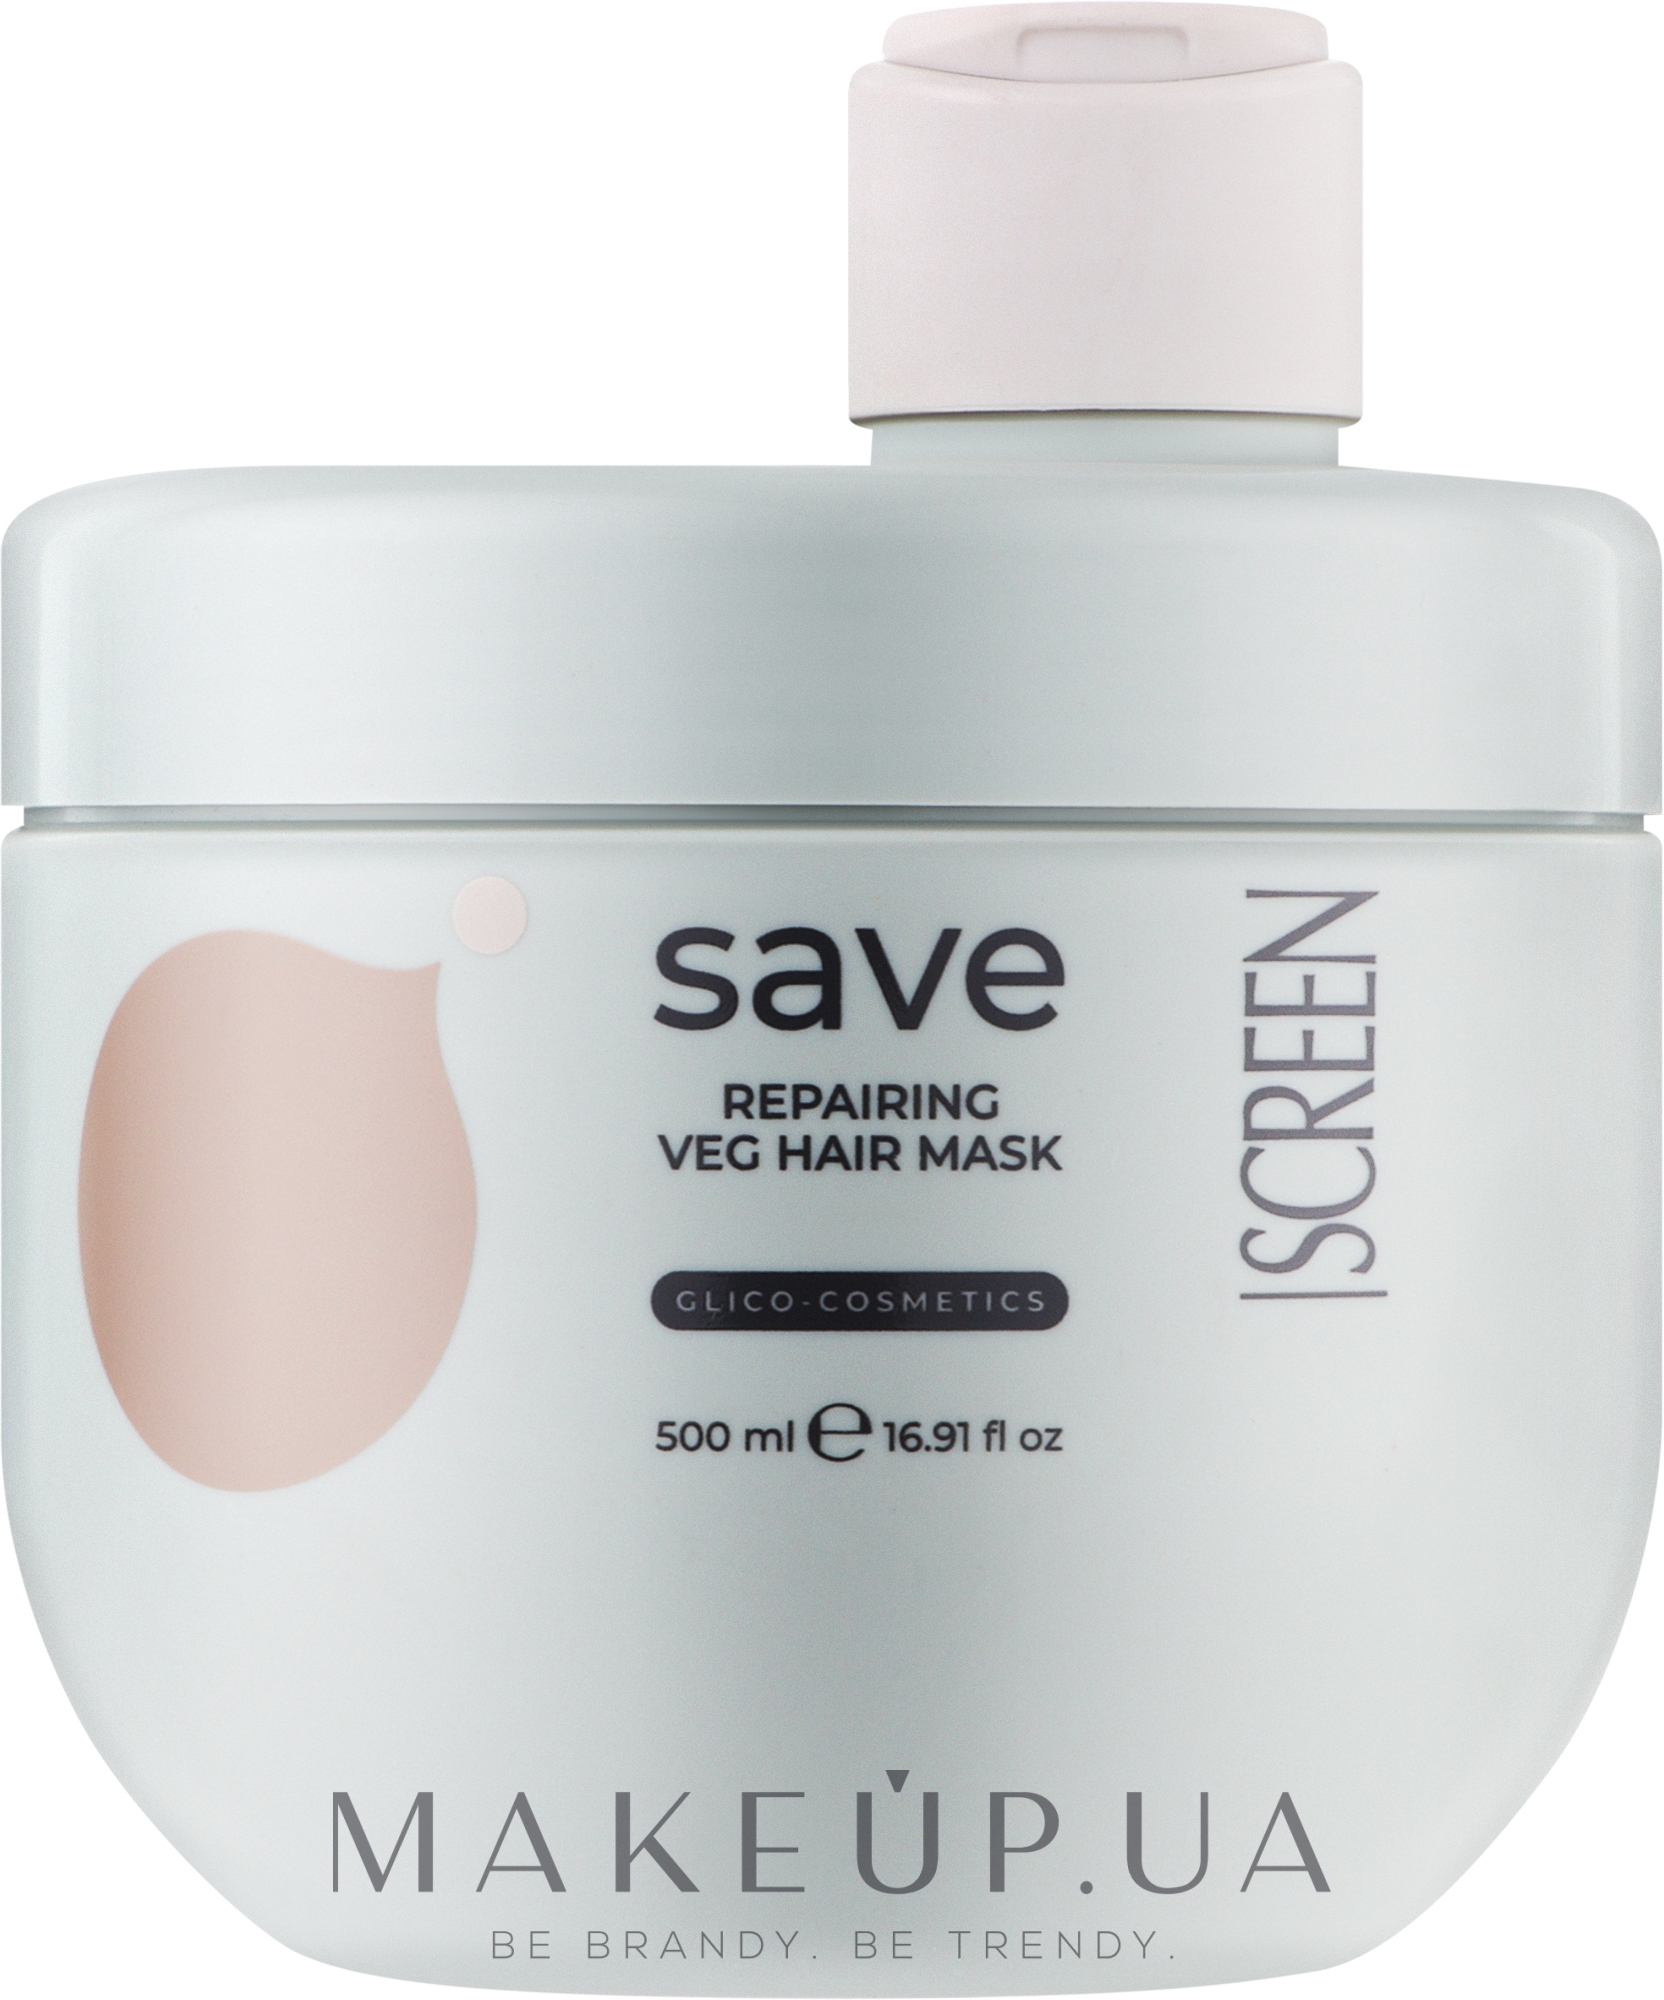 Фитопротеиновая маска для восстановления волос - Screen Purest Save Repairing Veg Hair Mask — фото 500ml